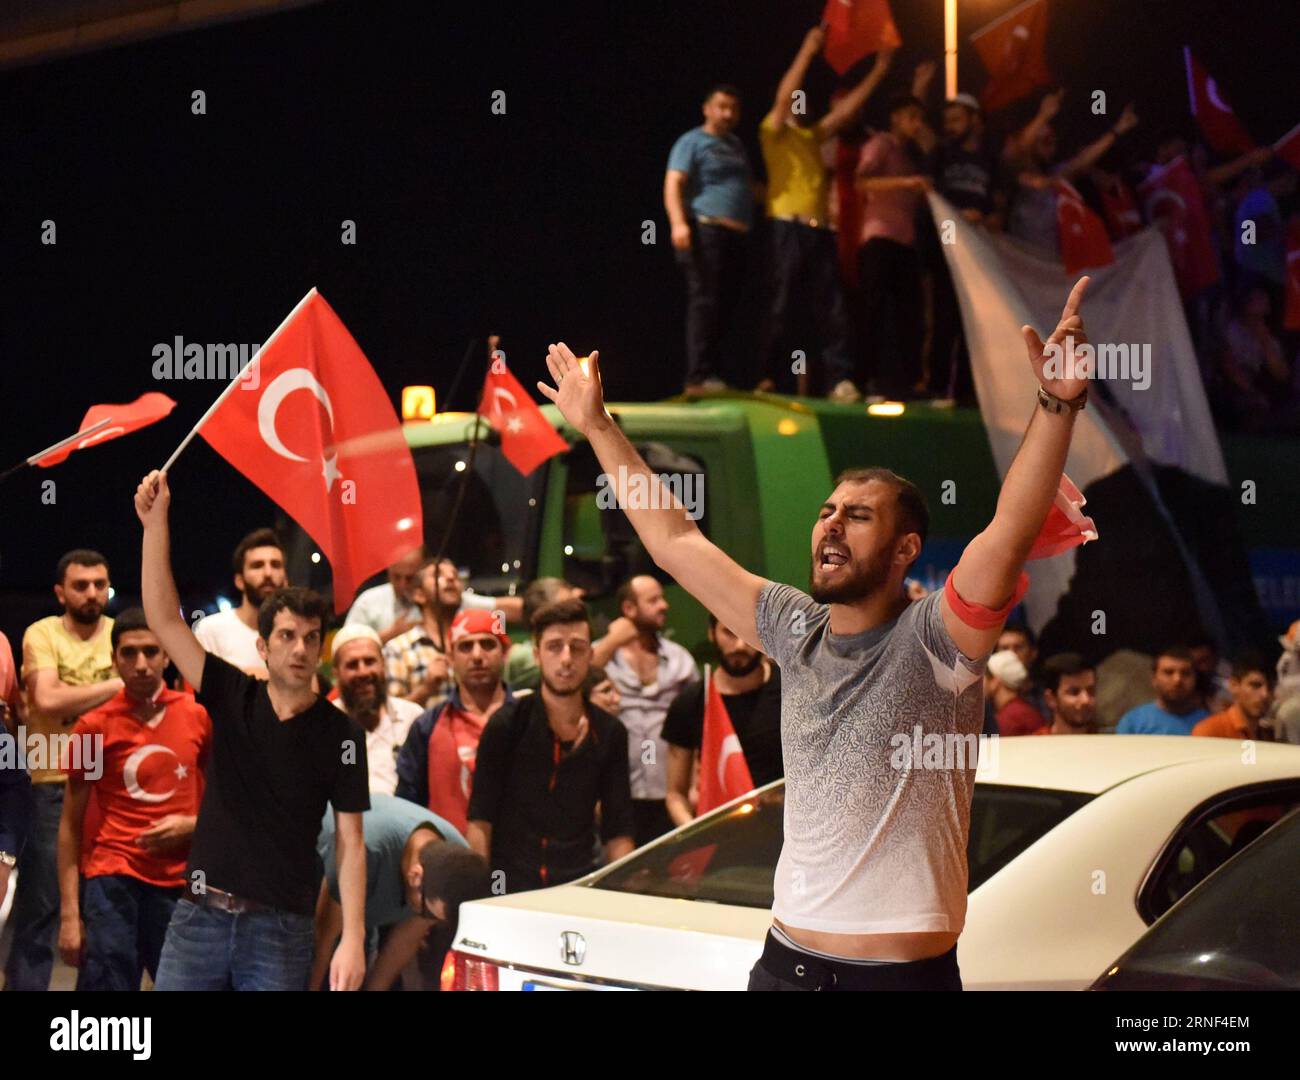 (160718) -- ISTANBUL, 18 luglio 2016 -- le persone partecipano a una manifestazione a sostegno del presidente turco Recep Tayyip Erdogan all'aeroporto Ataturk di Istanbul, Turchia, 18 luglio 2016. Il Ministero degli Esteri turco ha dichiarato in una dichiarazione di domenica che il fallito colpo di stato militare ha lasciato almeno 290 persone uccise e più di 6.000 sono state arrestate finora a causa del loro coinvolgimento nel colpo di stato. ) (nxl) TURCHIA-ISTANBUL-RALLY HexCanling PUBLICATIONxNOTxINxCHN 160718 Istanbul 18 luglio 2016 celebrità partecipano a un raduno a sostegno del presidente turco Recep Tayyip Erdogan PRESSO l'aeroporto ATATURK di Ista Foto Stock